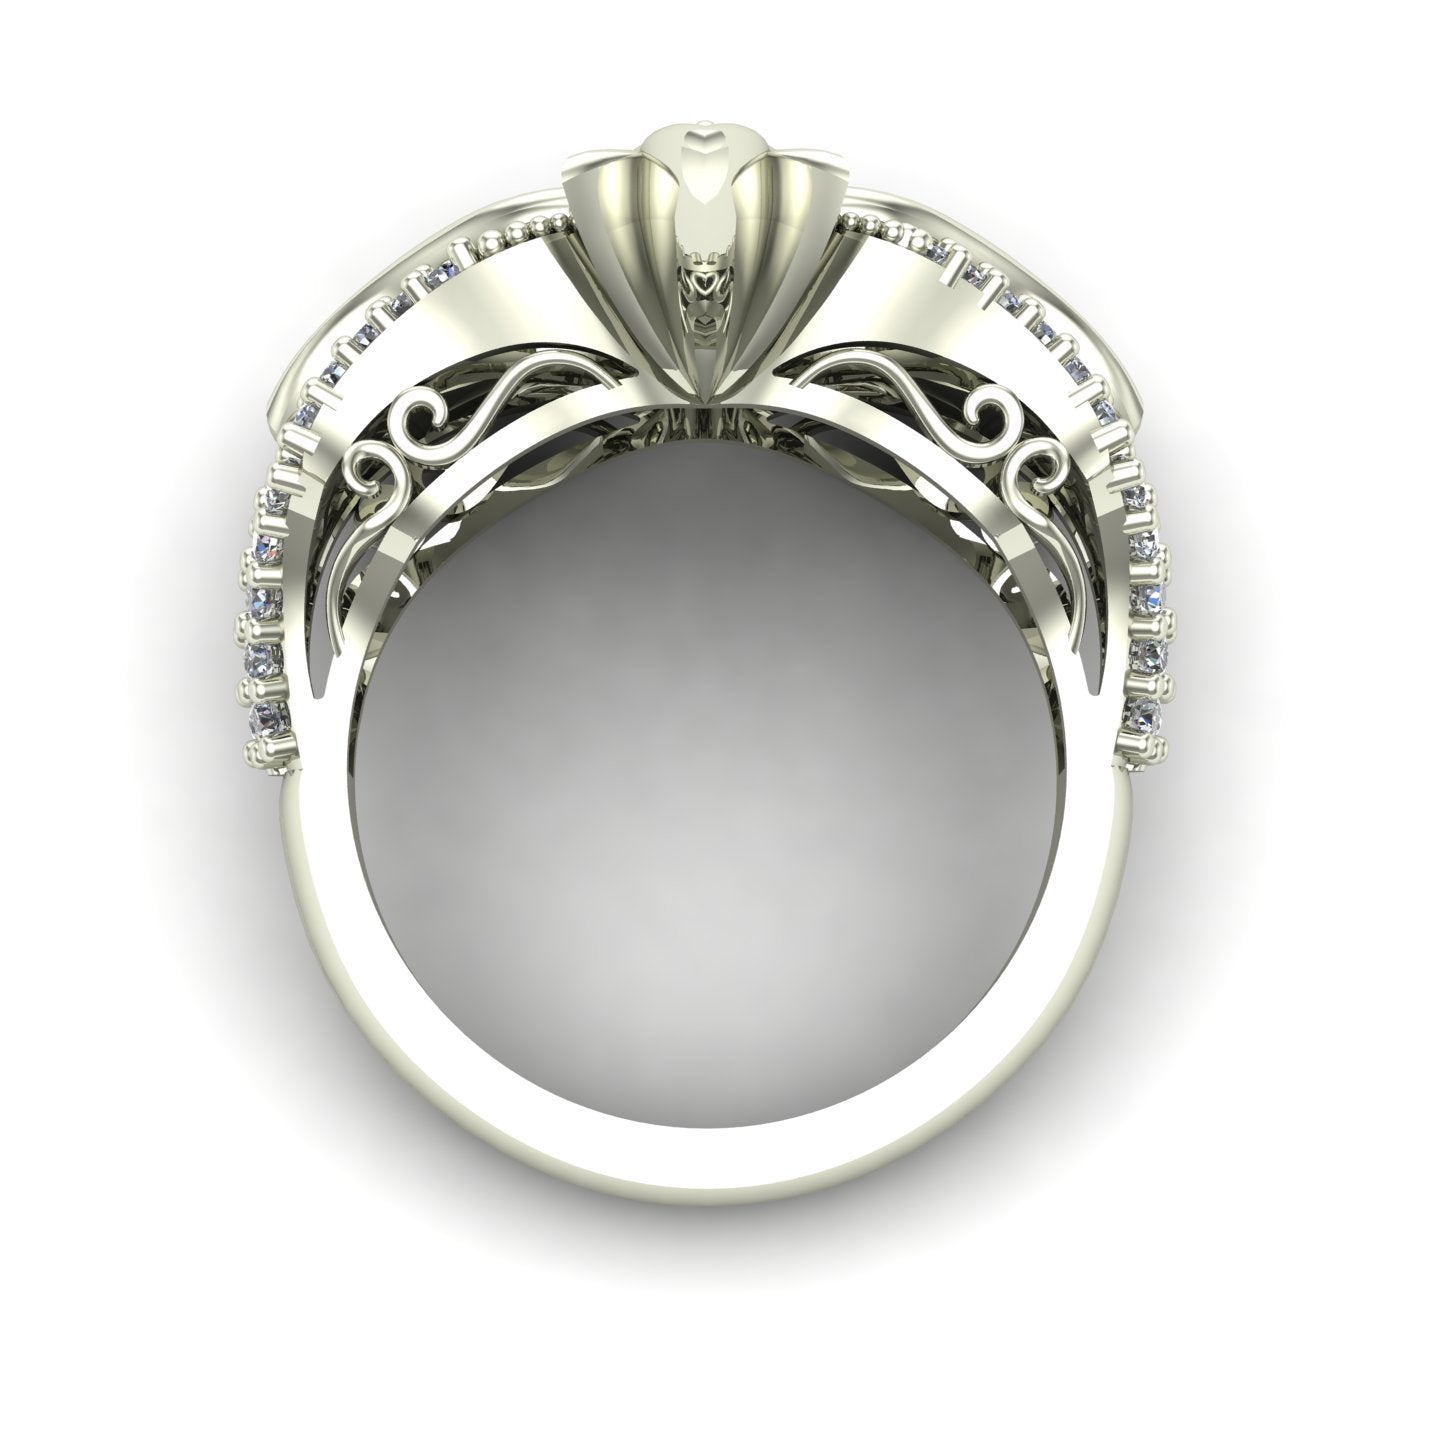 bezel set pear cut tsavorite green garnet and diamond venetian carnival mask ring in 14k white gold - Charles Babb Designs - through finger view